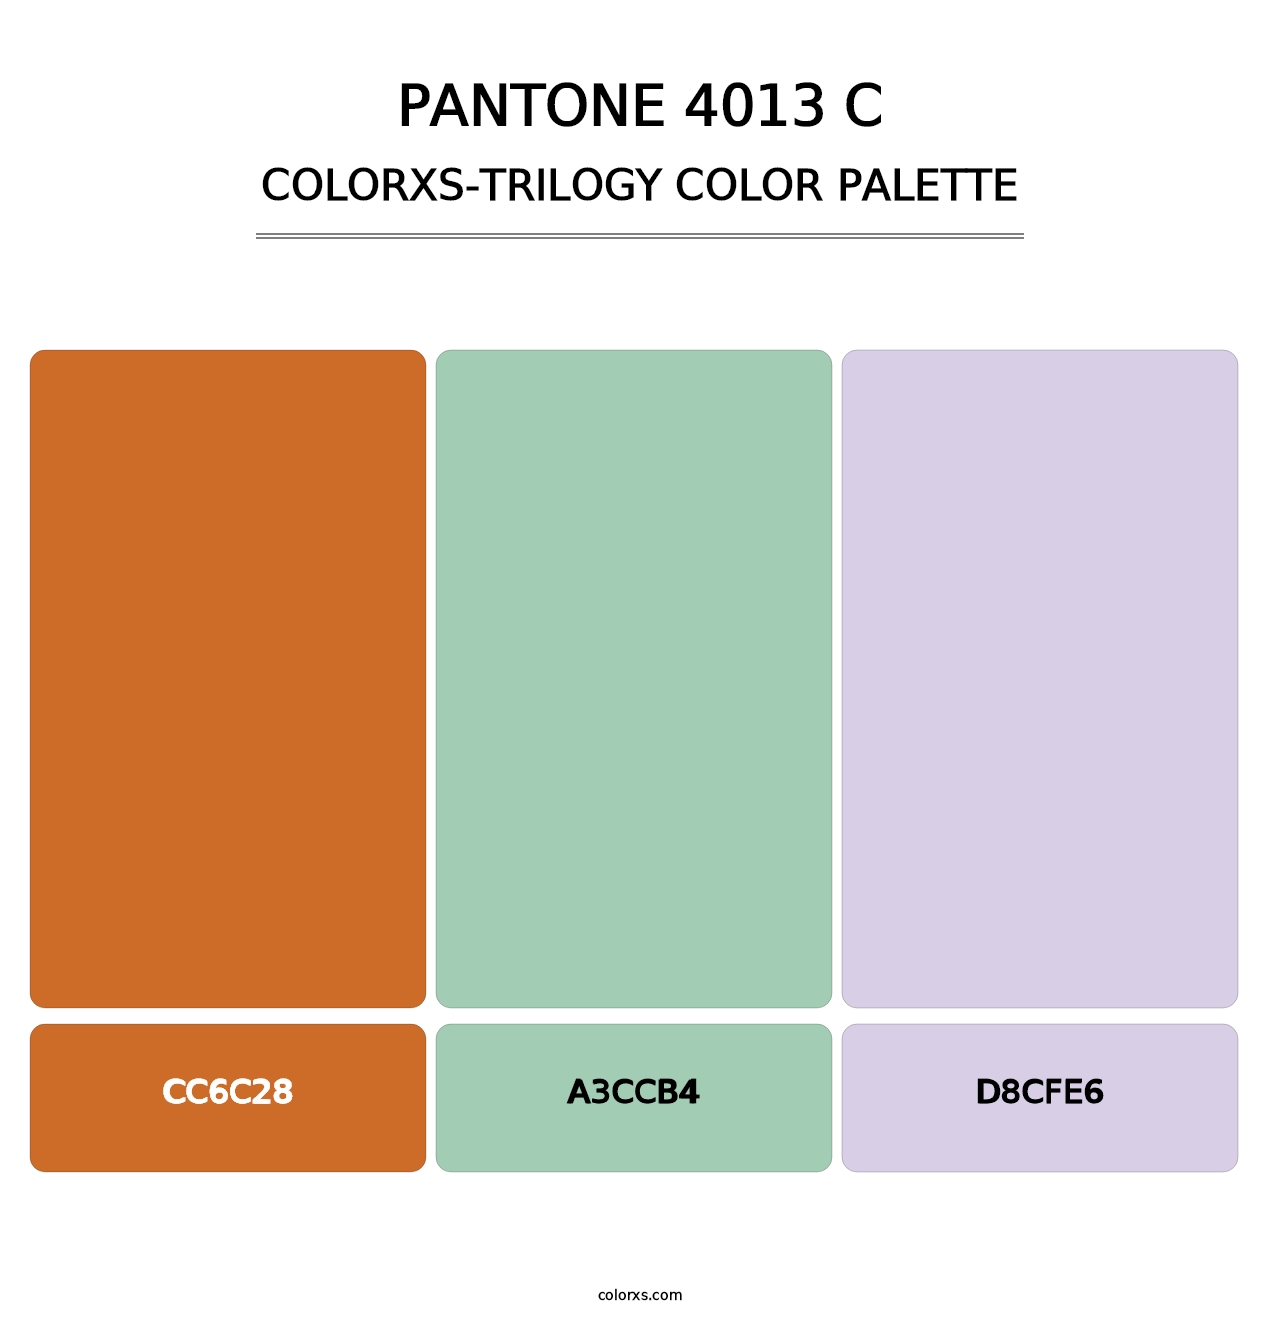 PANTONE 4013 C - Colorxs Trilogy Palette